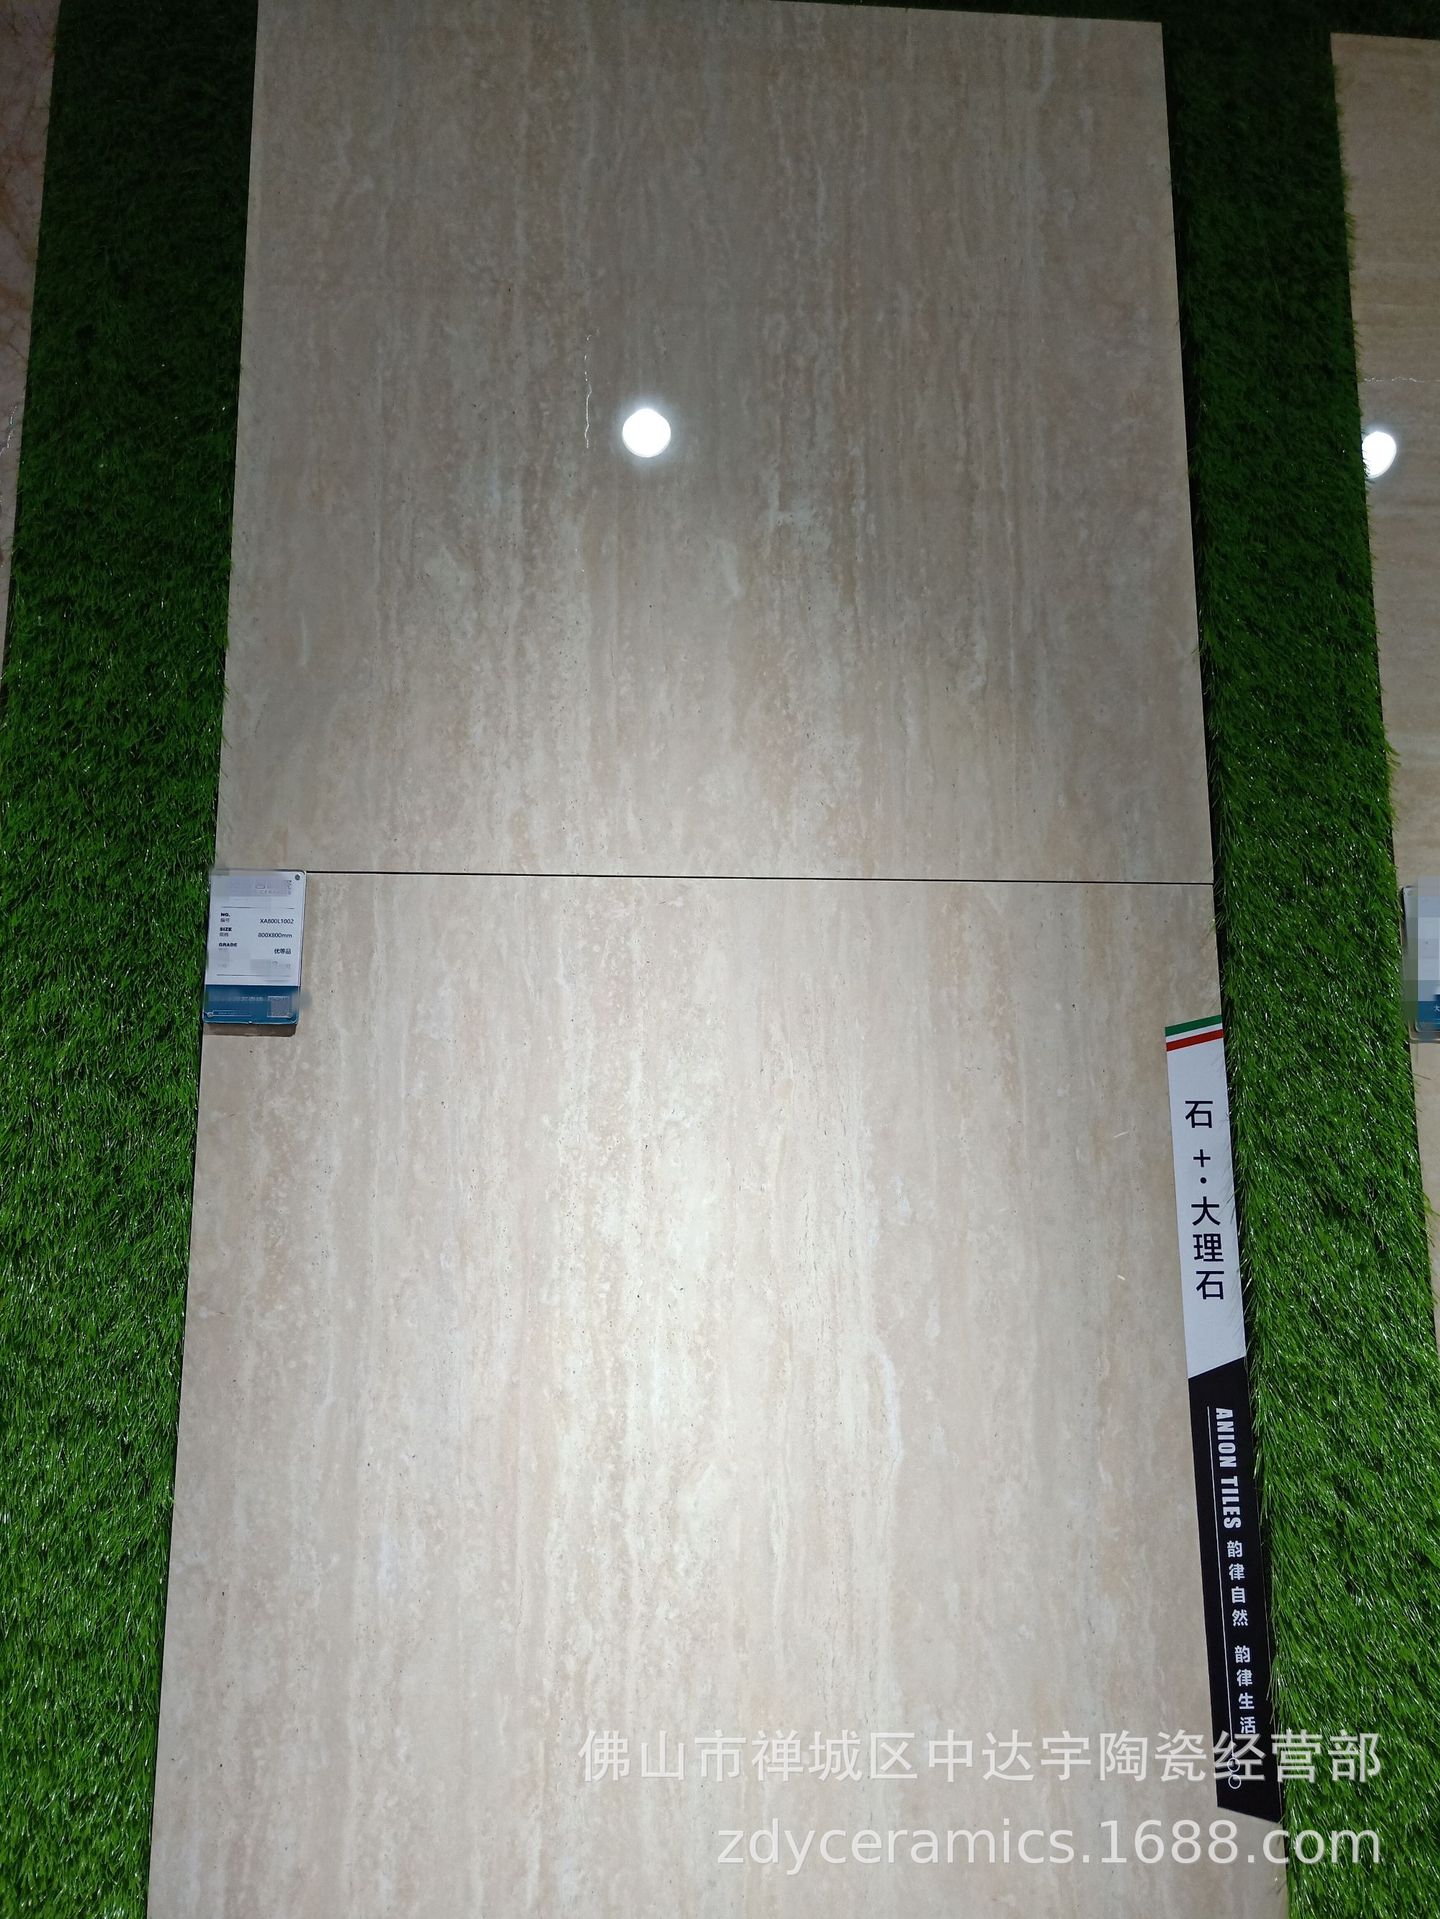 佛山Z客厅地板砖负离子工程大理石瓷砖800X800MM地面砖浴室墙面砖示例图3